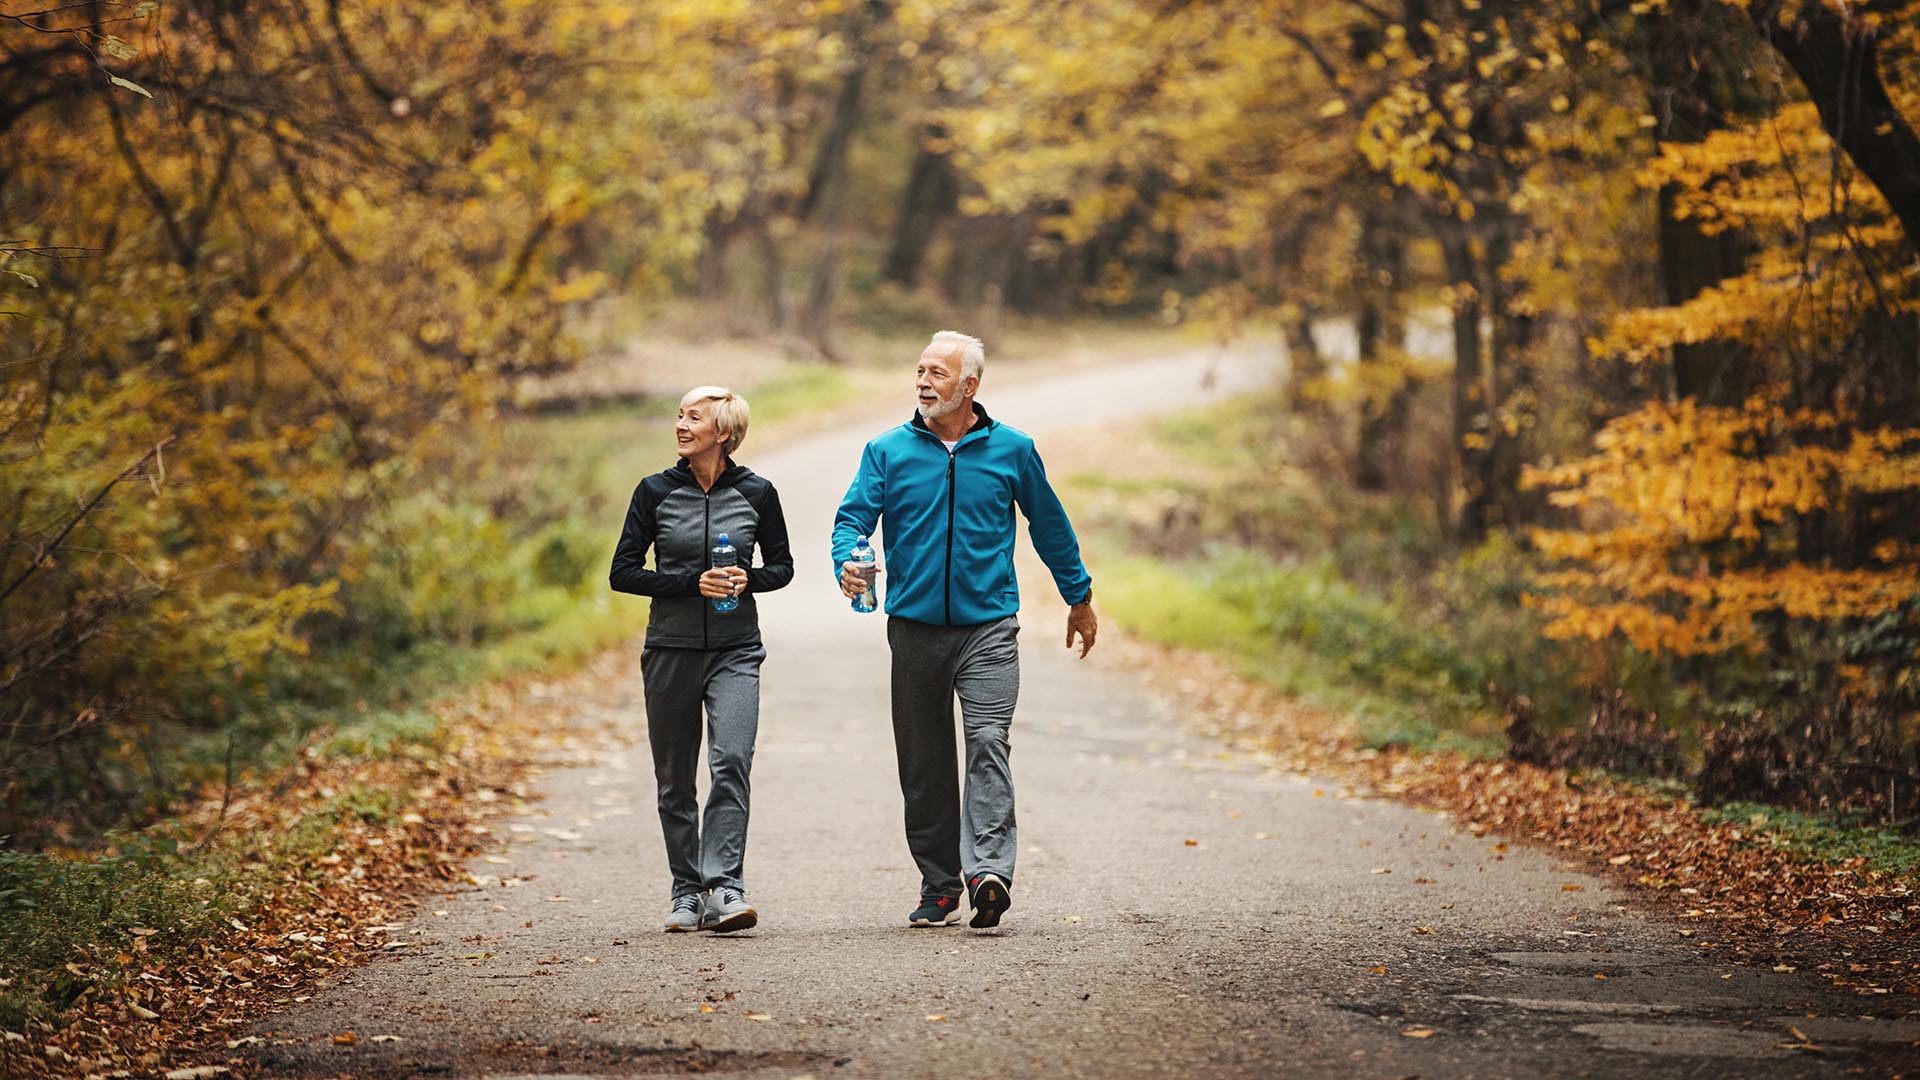 Caminar es una buena opción de ejercicio, sin gran esfuerzo (Getty Images)